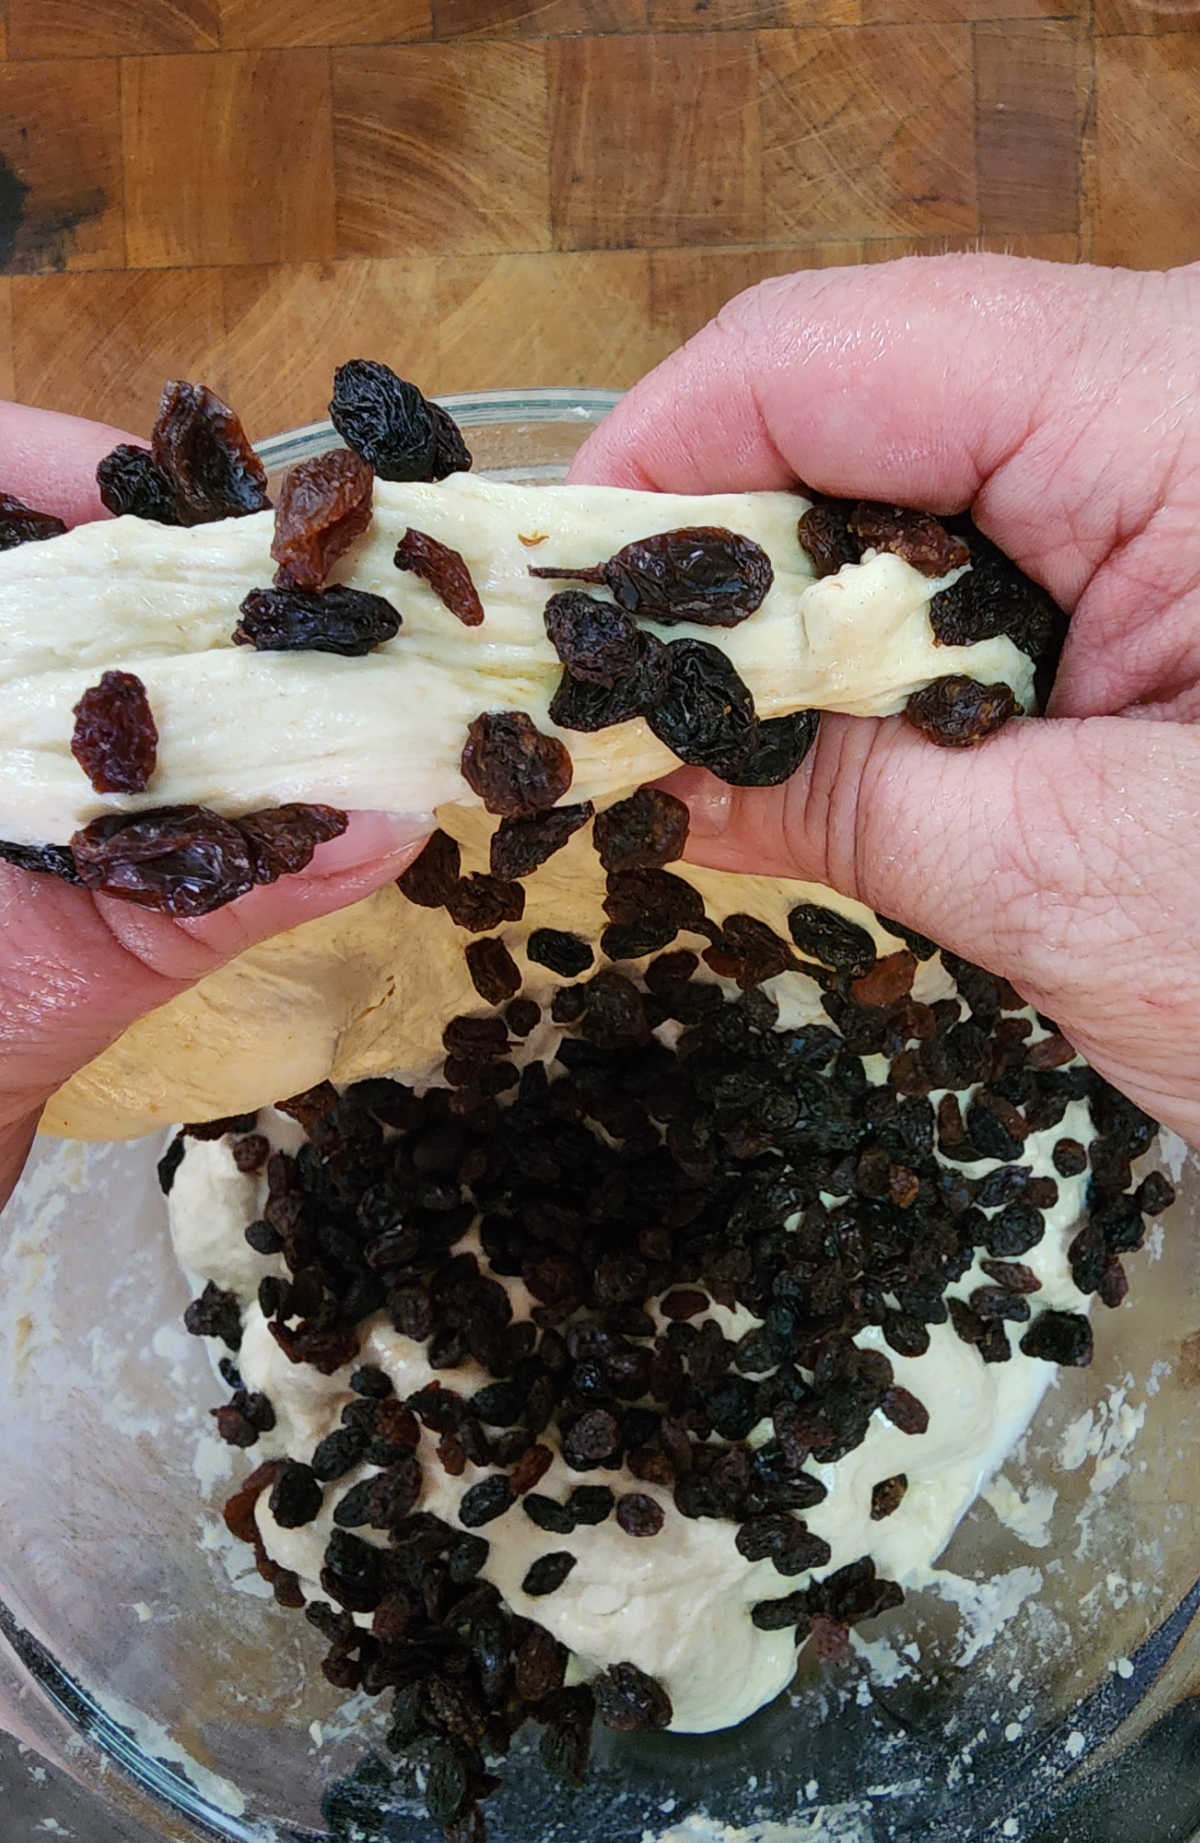 Hands stretch and folding raisins into sourdough dough.